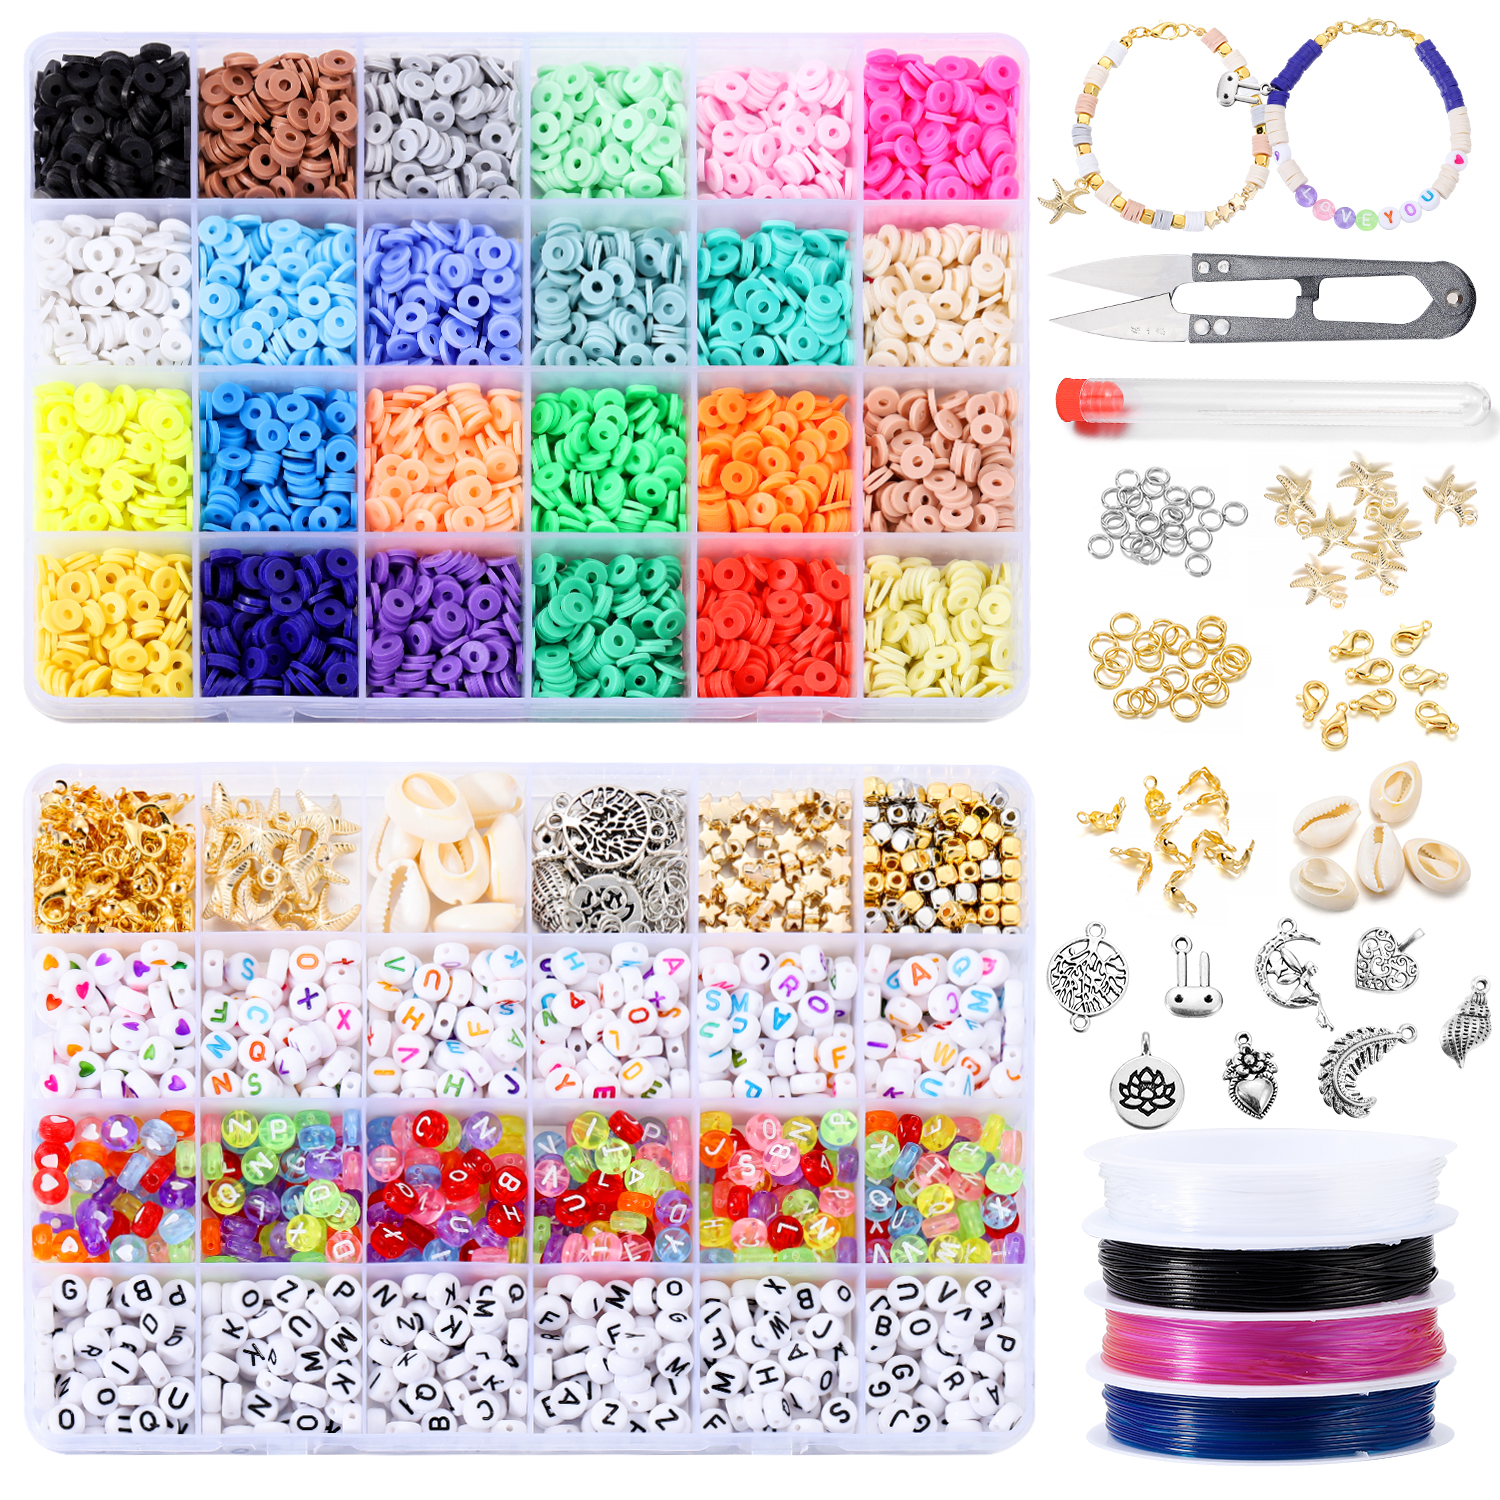  Deinduser Bracelet Making Kit 7200 Pcs Clay Beads for